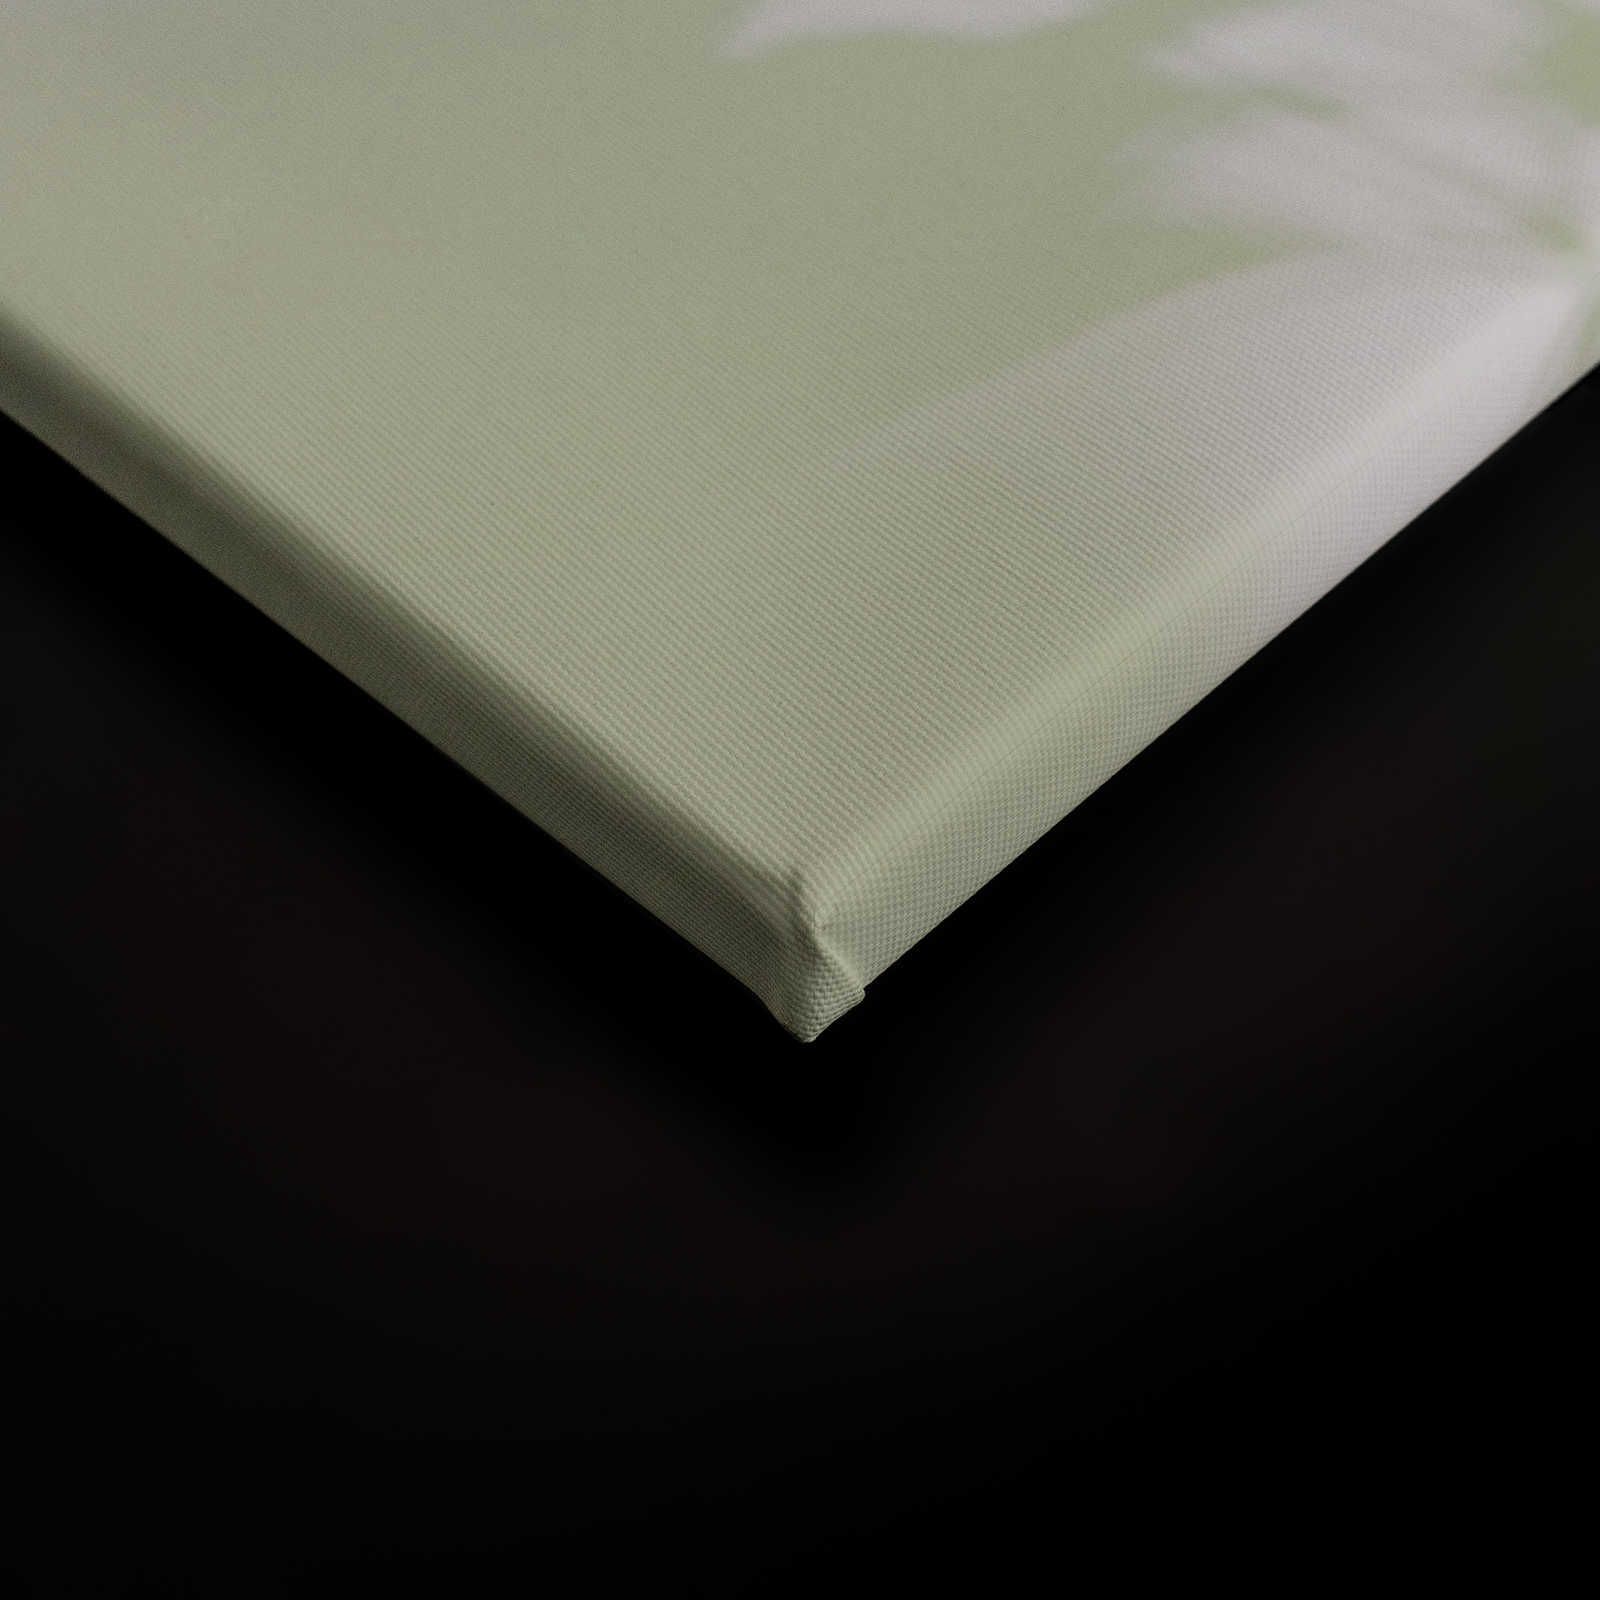             Shadow Room 3 - Lienzo Naturaleza Verde y Blanco, Diseño Desvanecido - 0.90 m x 0.60 m
        